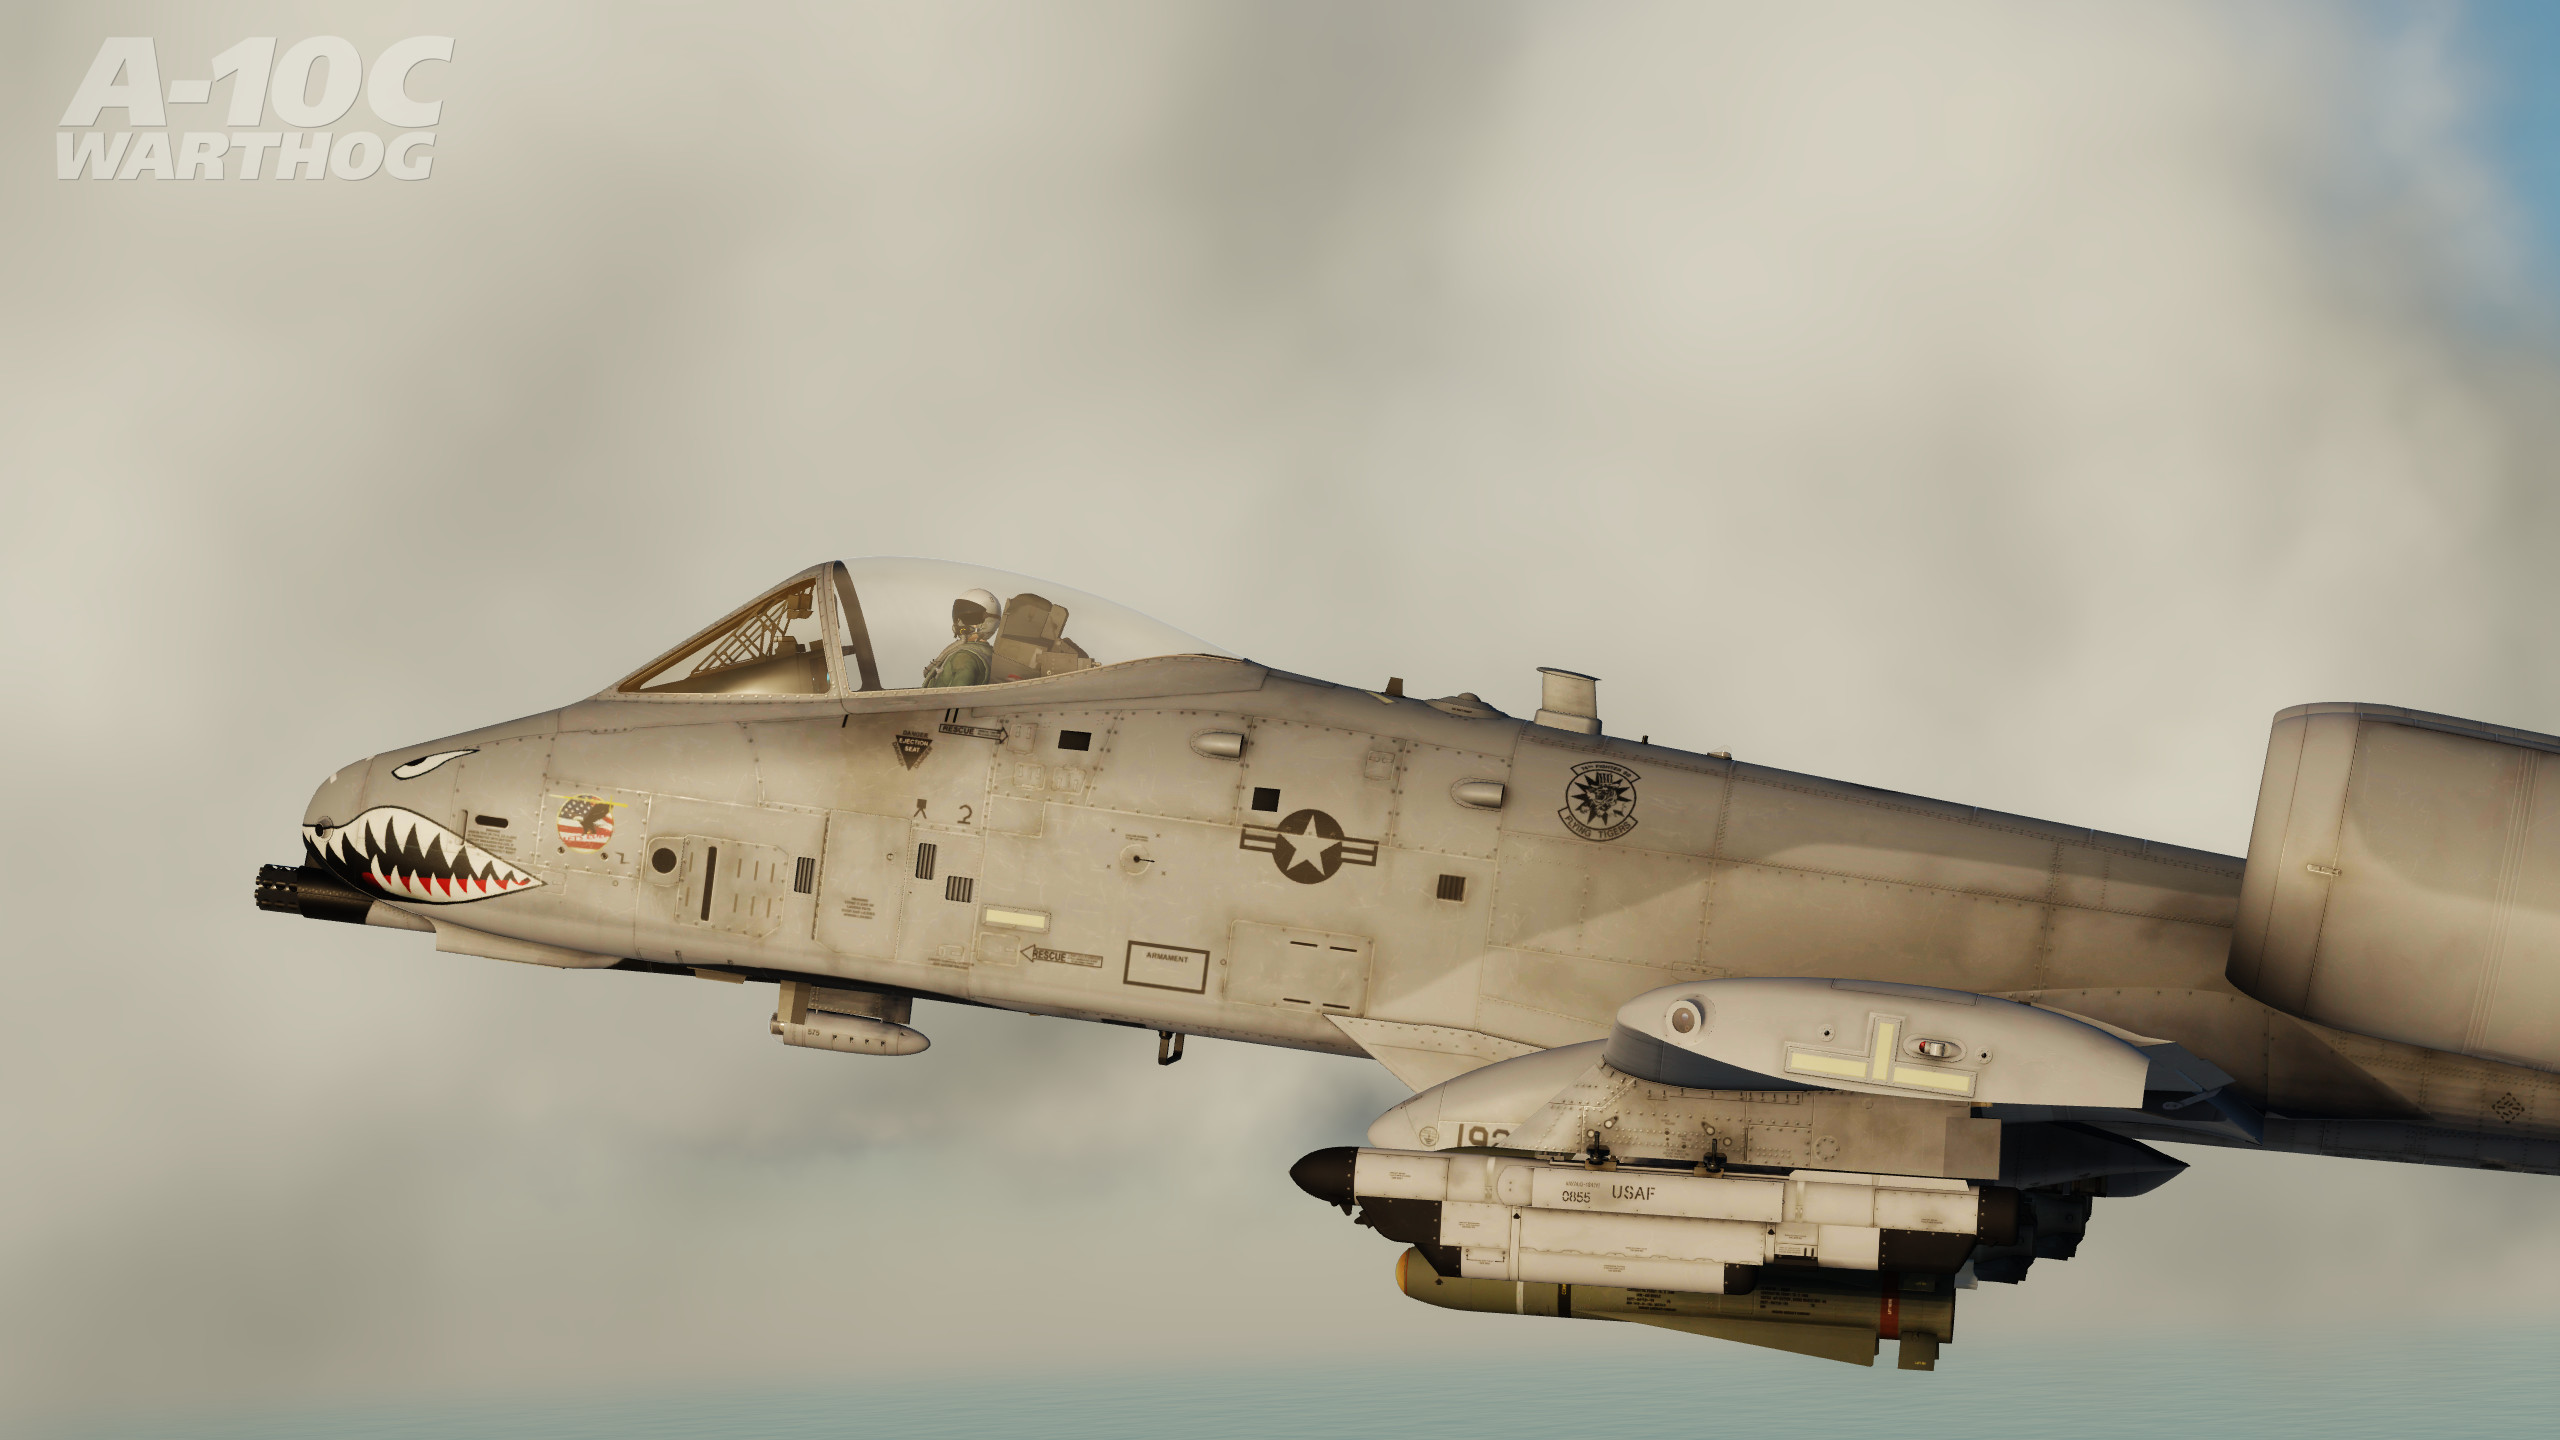 DCS: A-10C Warthog screenshot